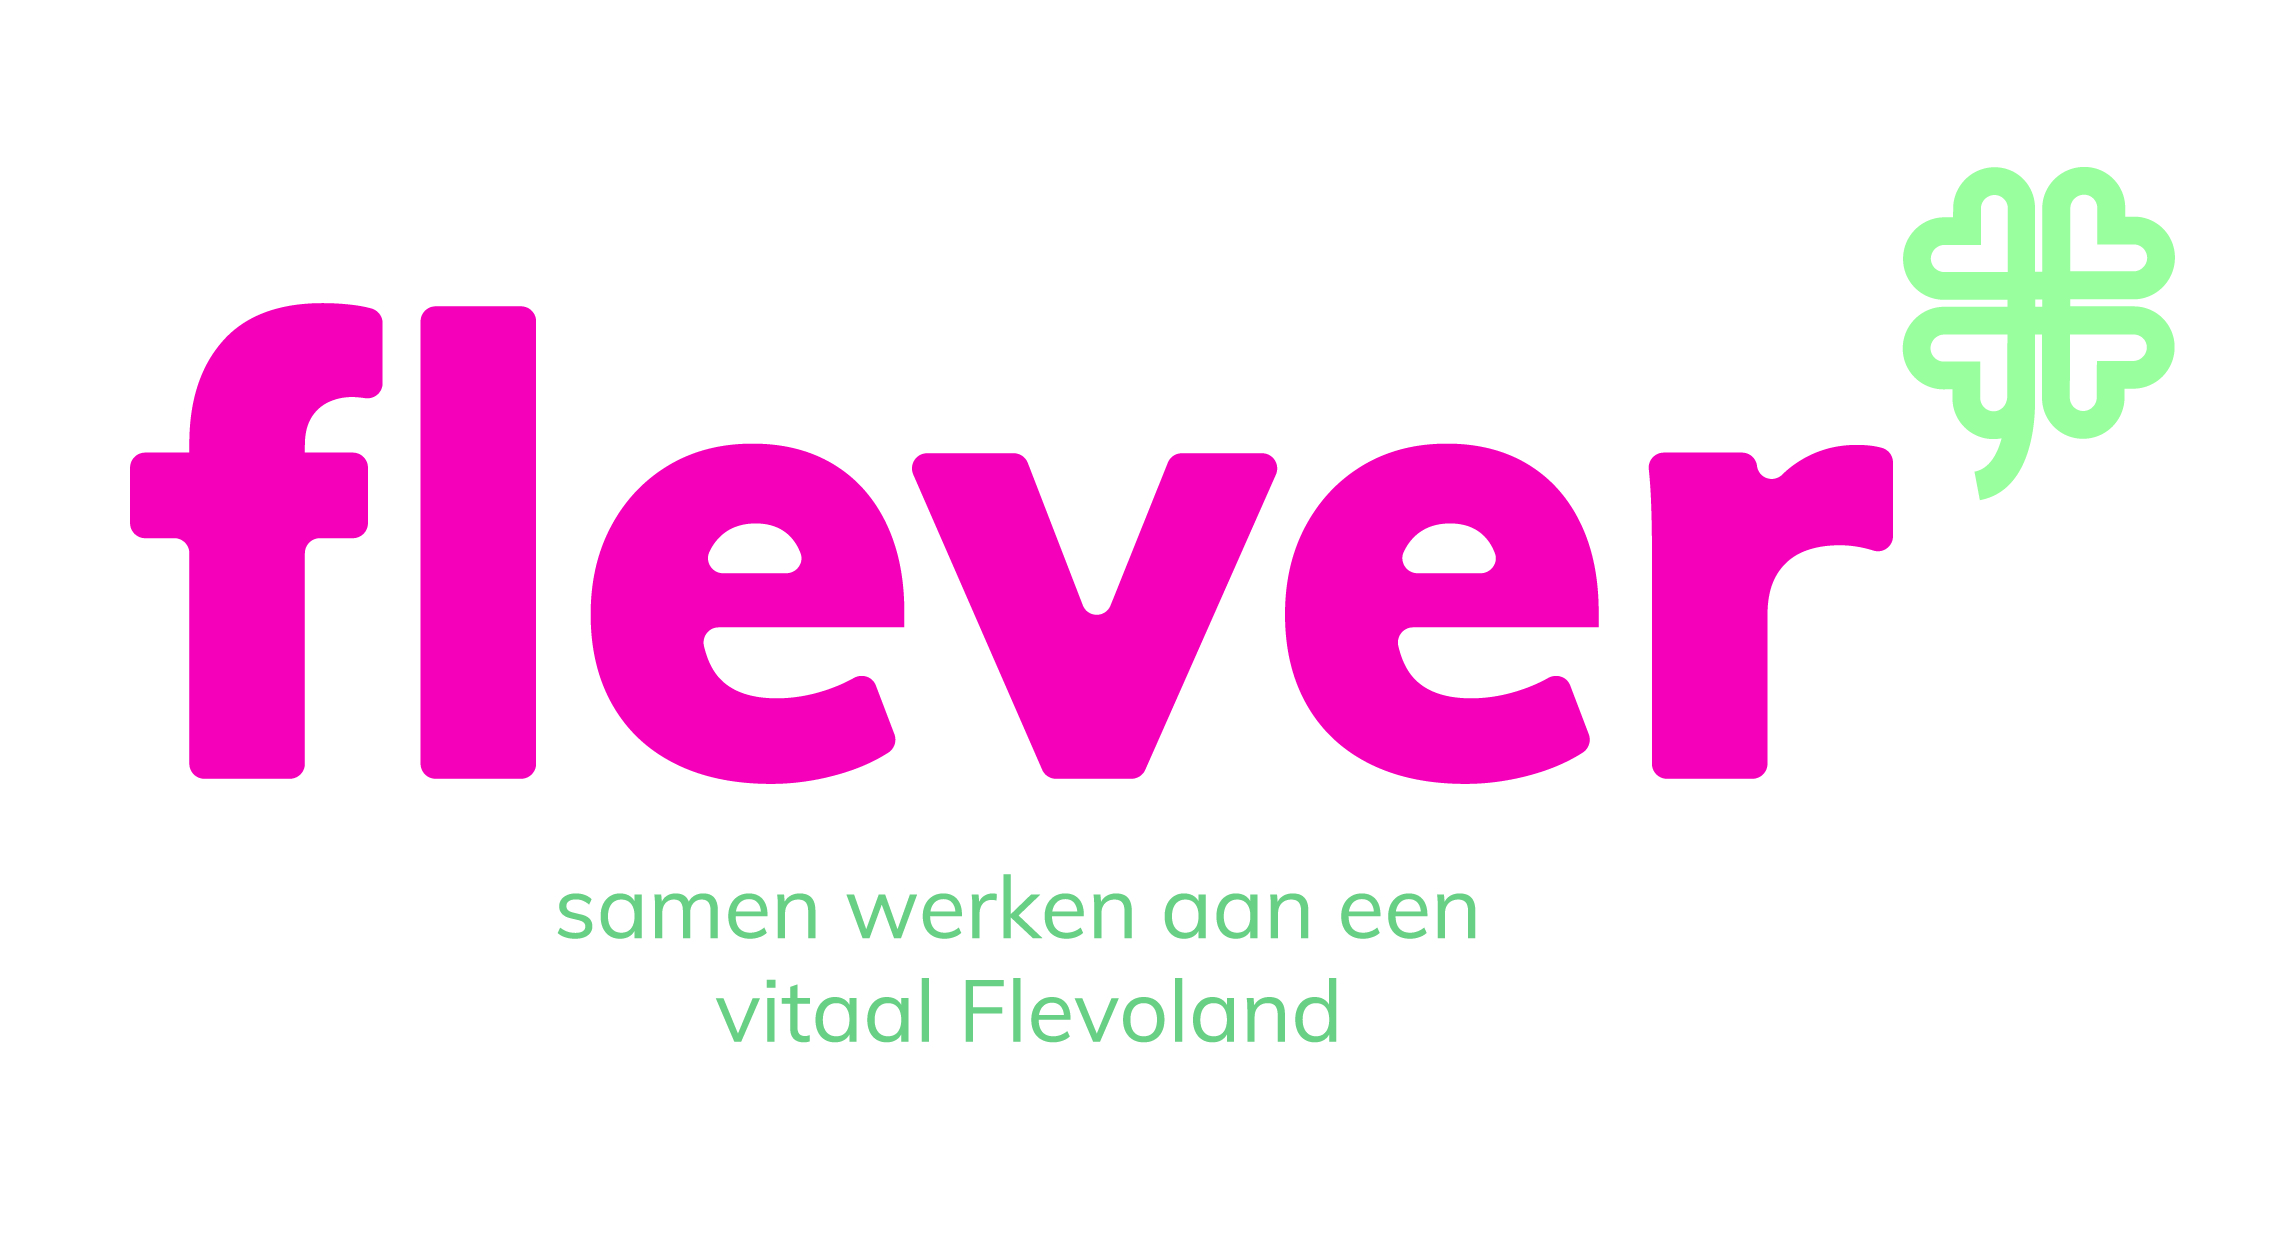 Logo Flever